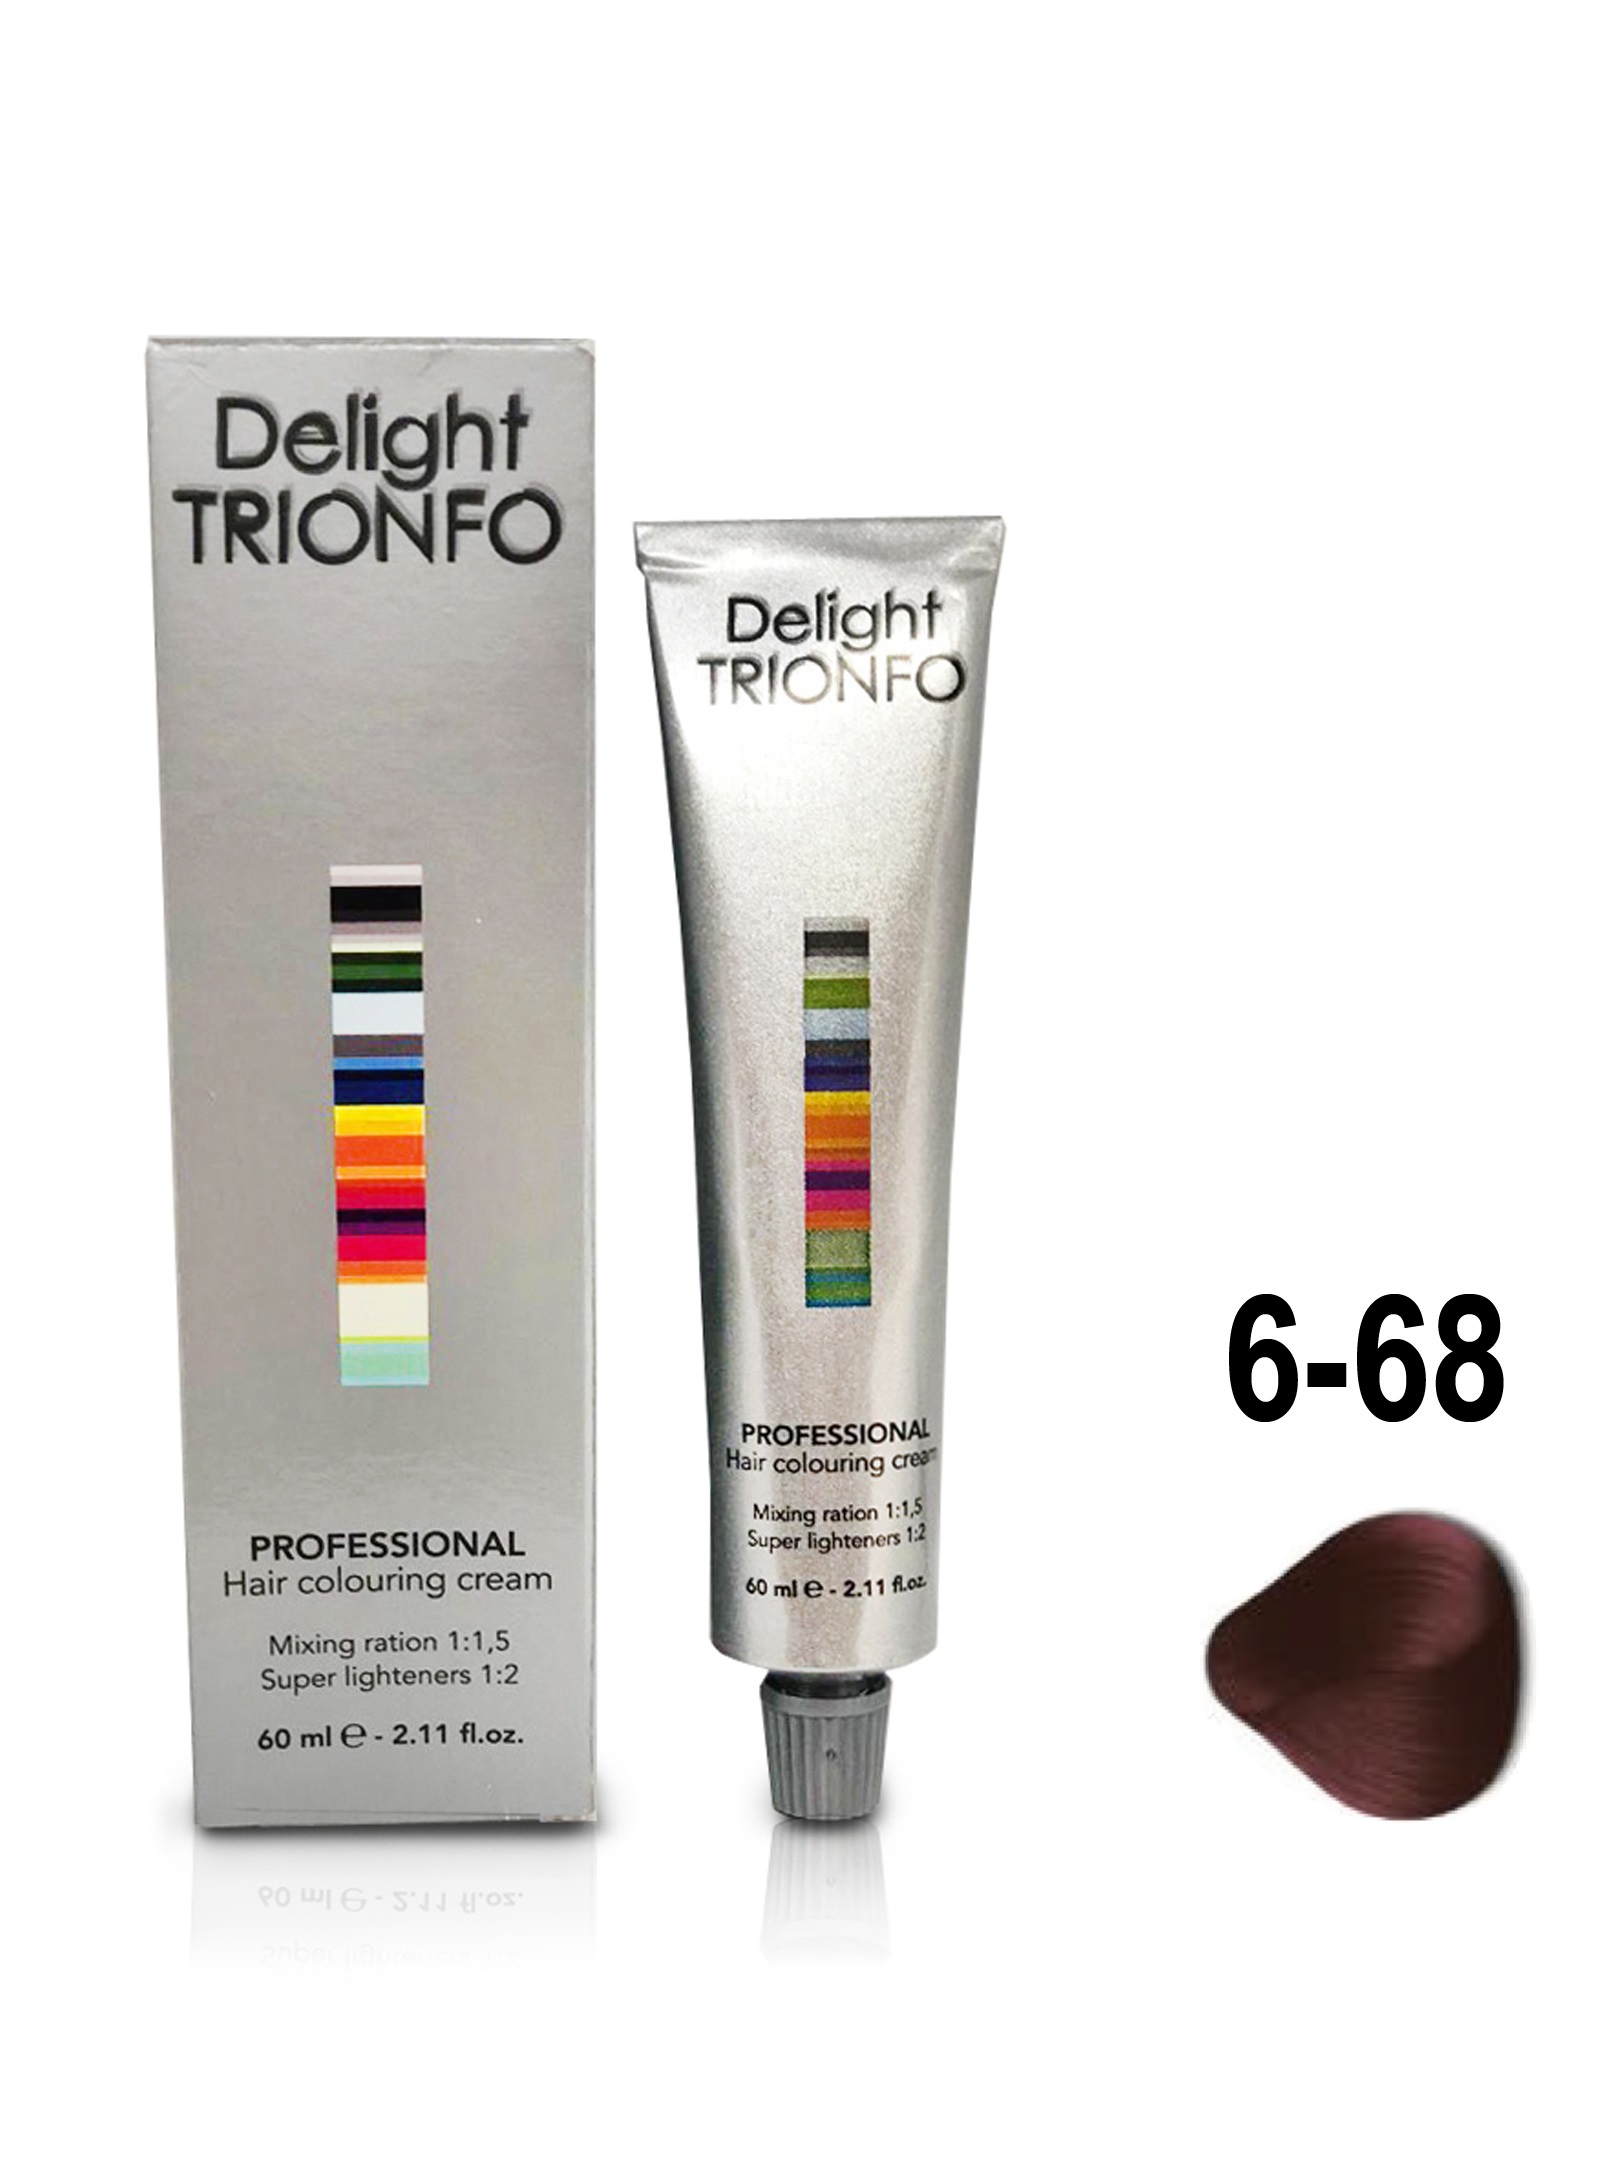 Краска для волос Constant Delight Trionfo 6-68 Темный русый шоколад красный 60 мл крем краска colorevo 84451 4 51 каштановый темный шоколад используется в концептуальных оттенках 100 мл каштановый